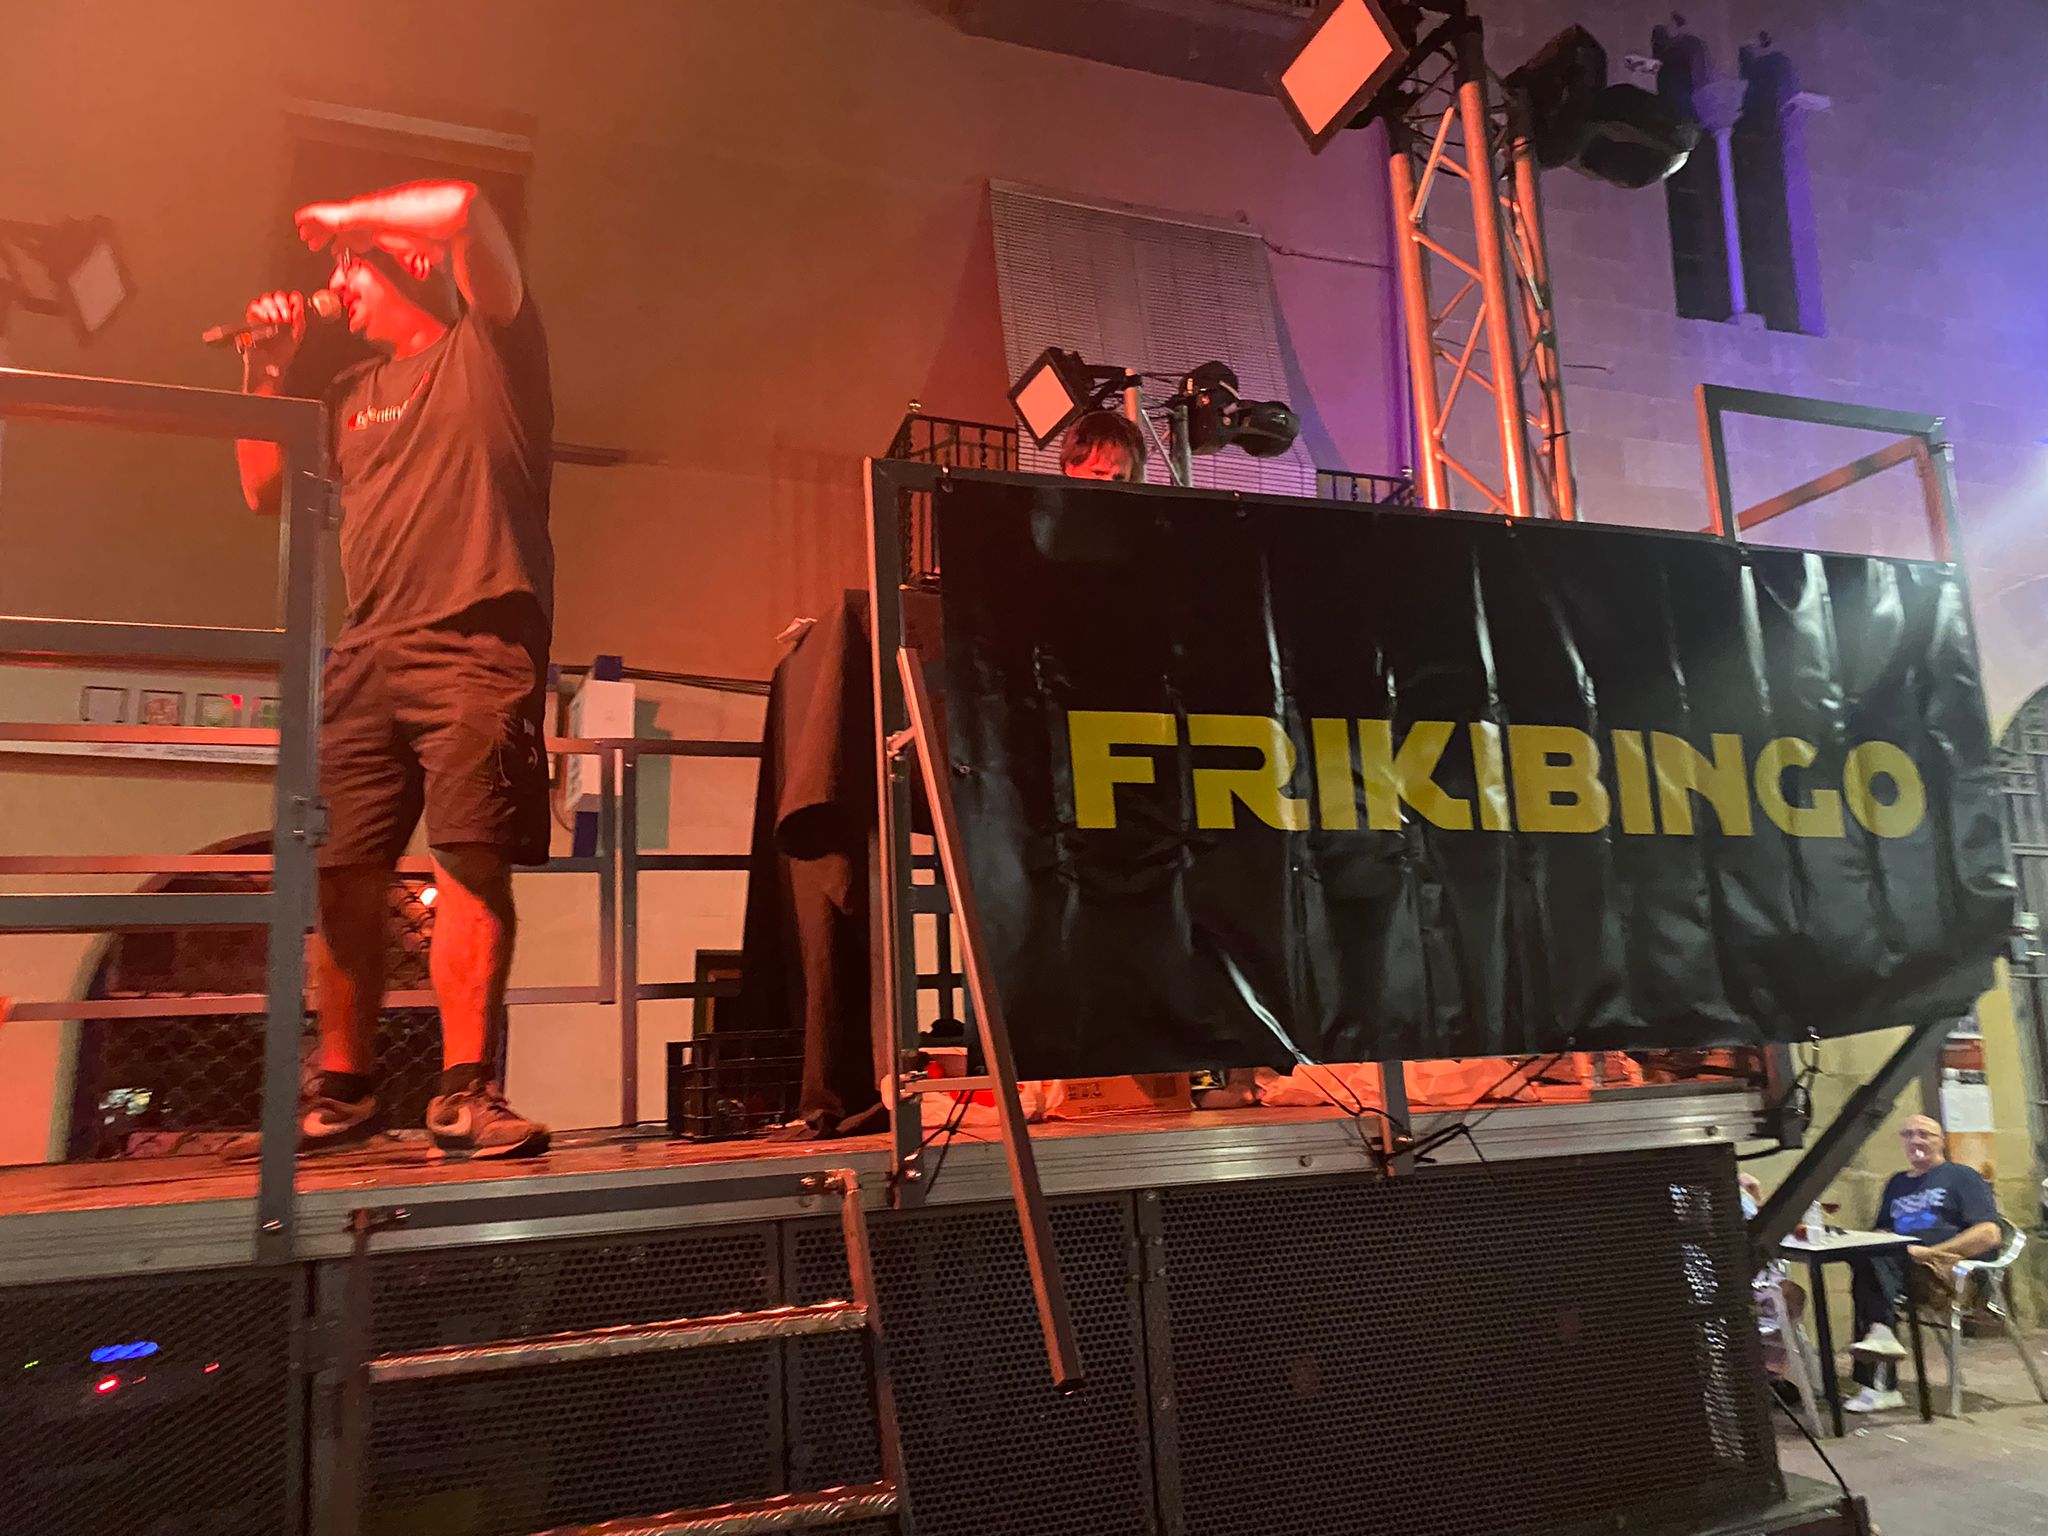 El Frikibingo i Pep Plaza protagonitzen la prèvia de FM